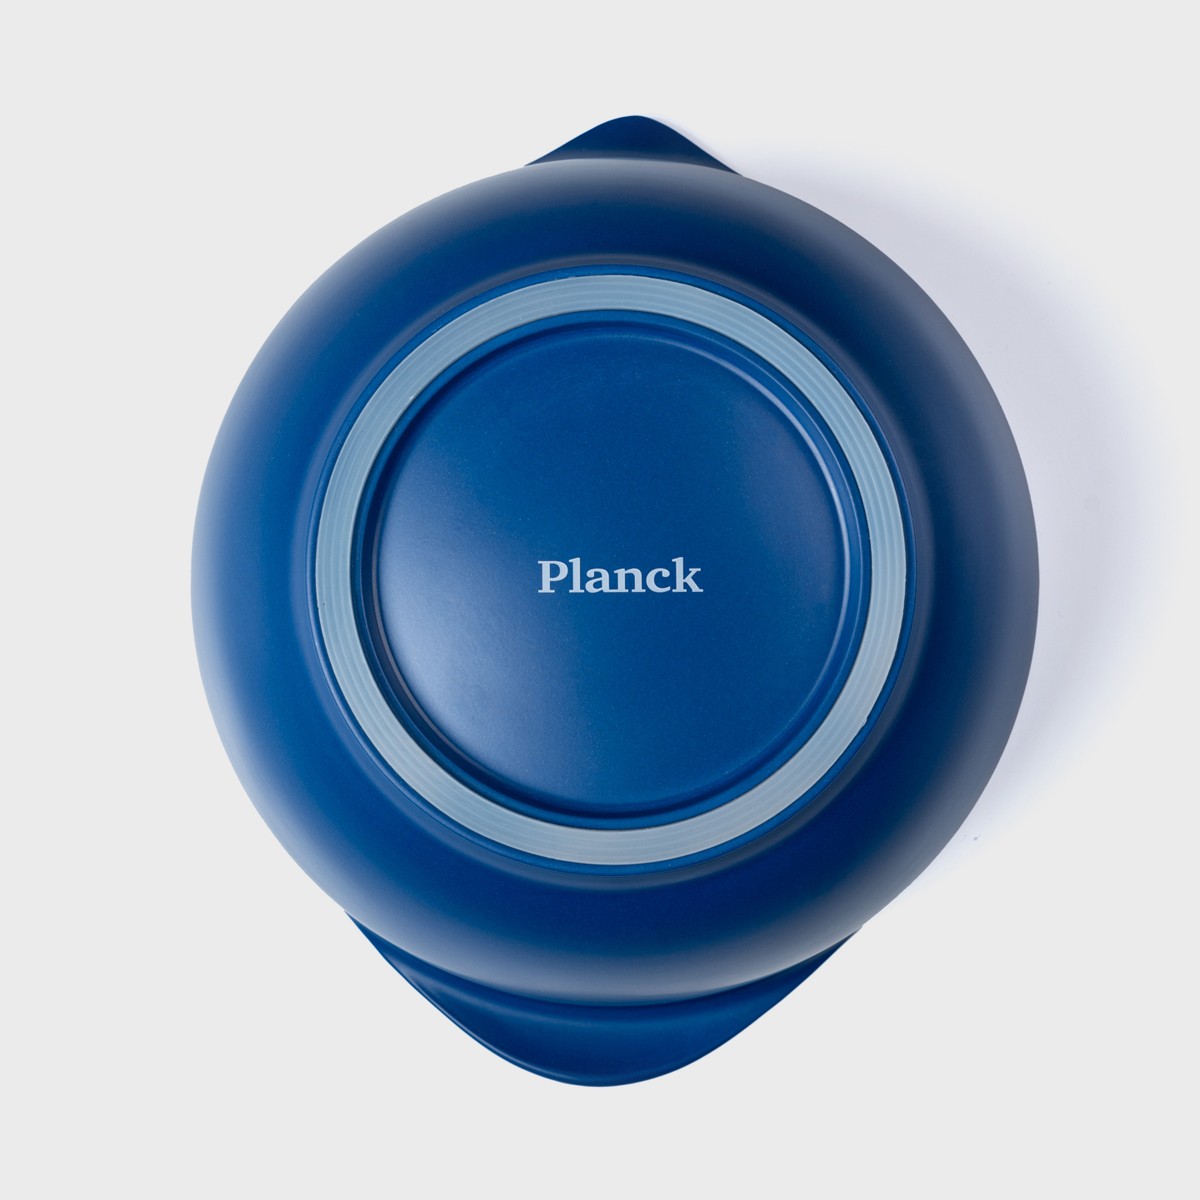 Bowl Saladeira Planck l Eco Friendly